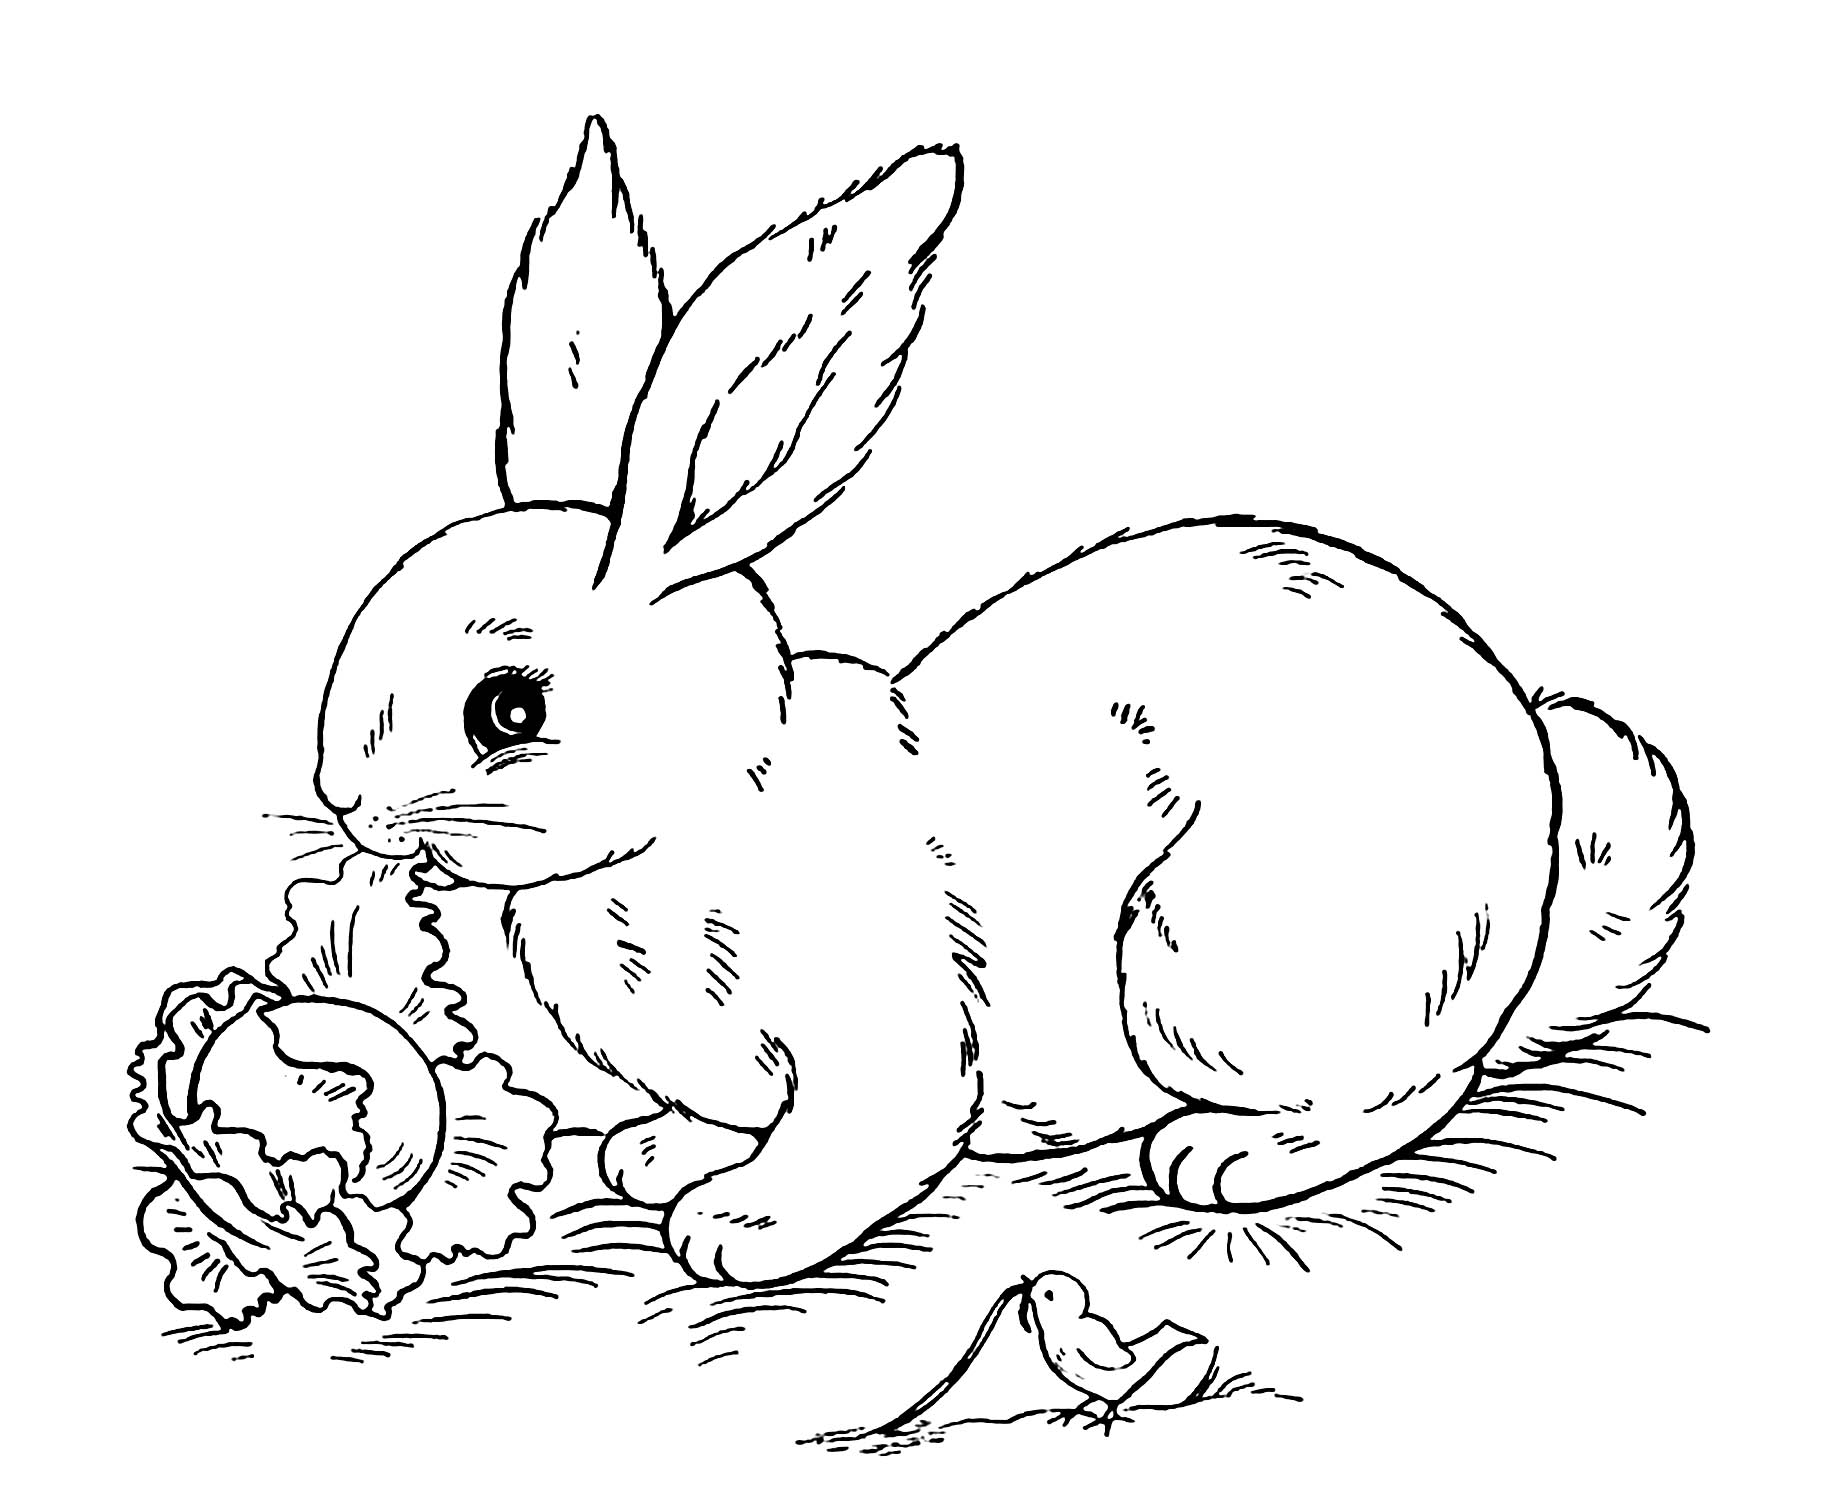 Divertidas páginas para colorear de Conejo para imprimir y colorear